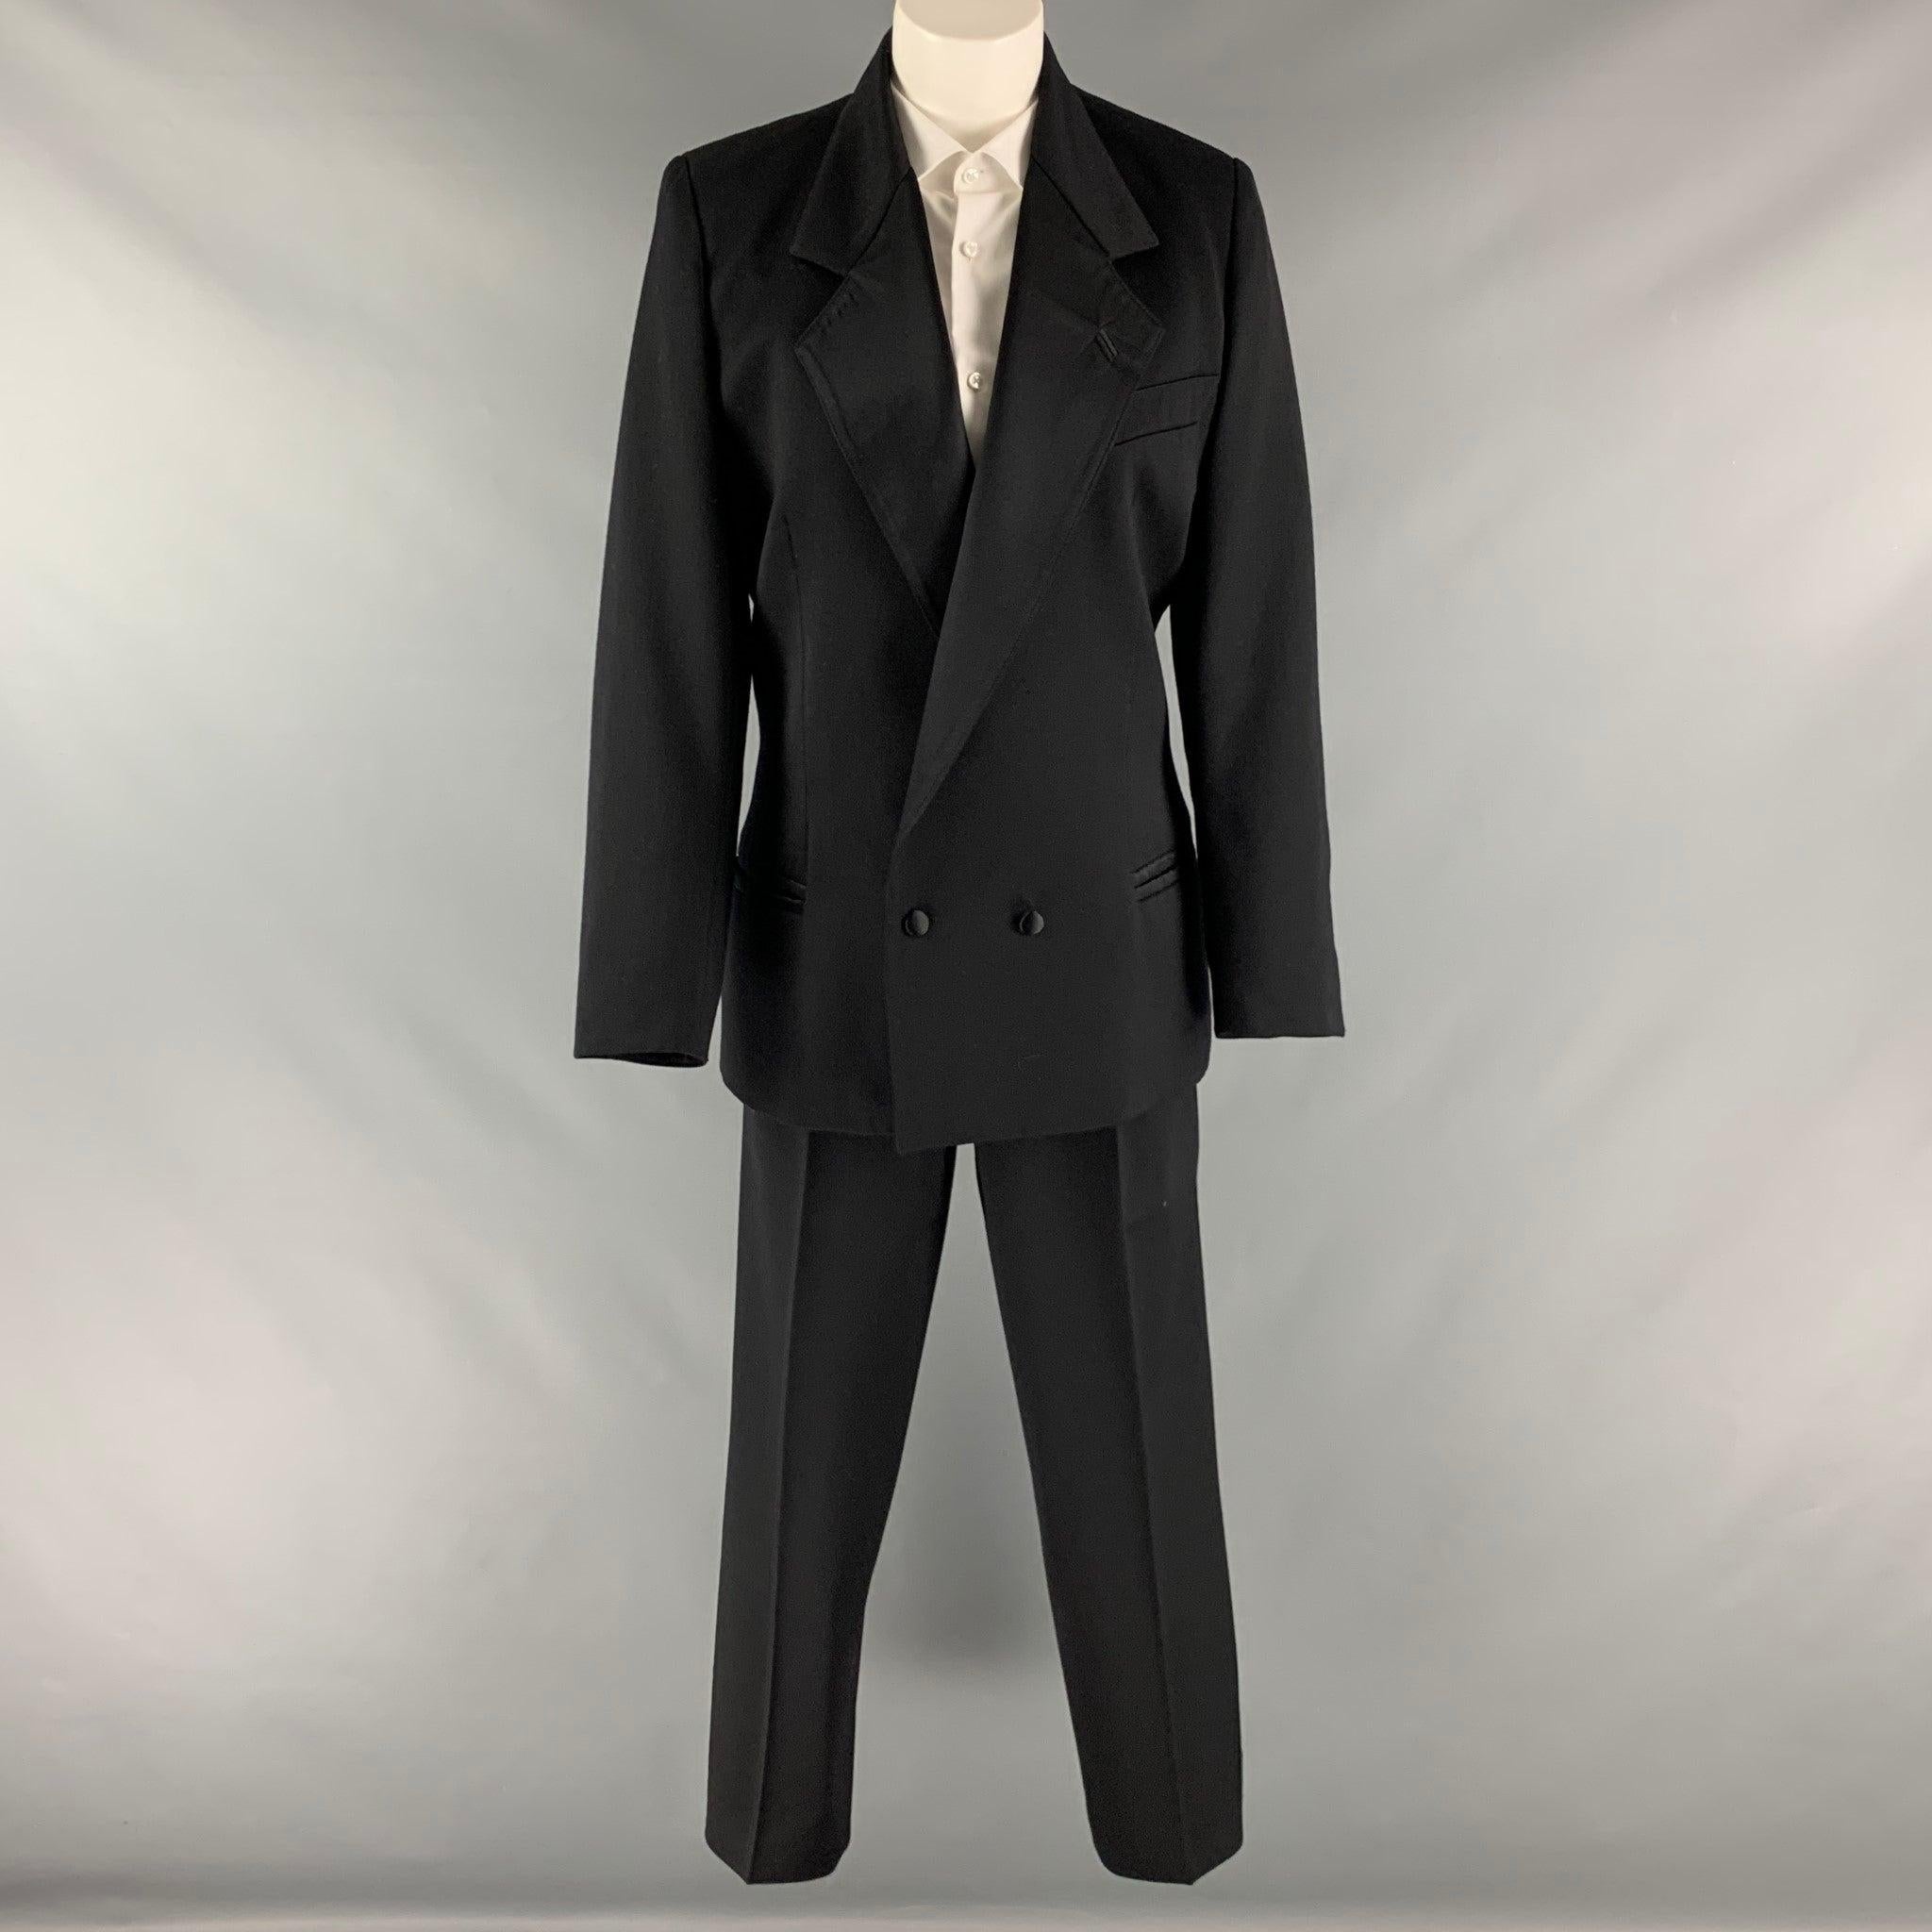 L'ensemble tailleur-pantalon CLAUDE MONTANA est en soie noire tissée et comprend une veste à double boutonnage, à épaulettes et à revers cranté, ainsi qu'un pantalon plissé à taille haute assorti.Très bon état d'occasion. Marques d'usure modérées.